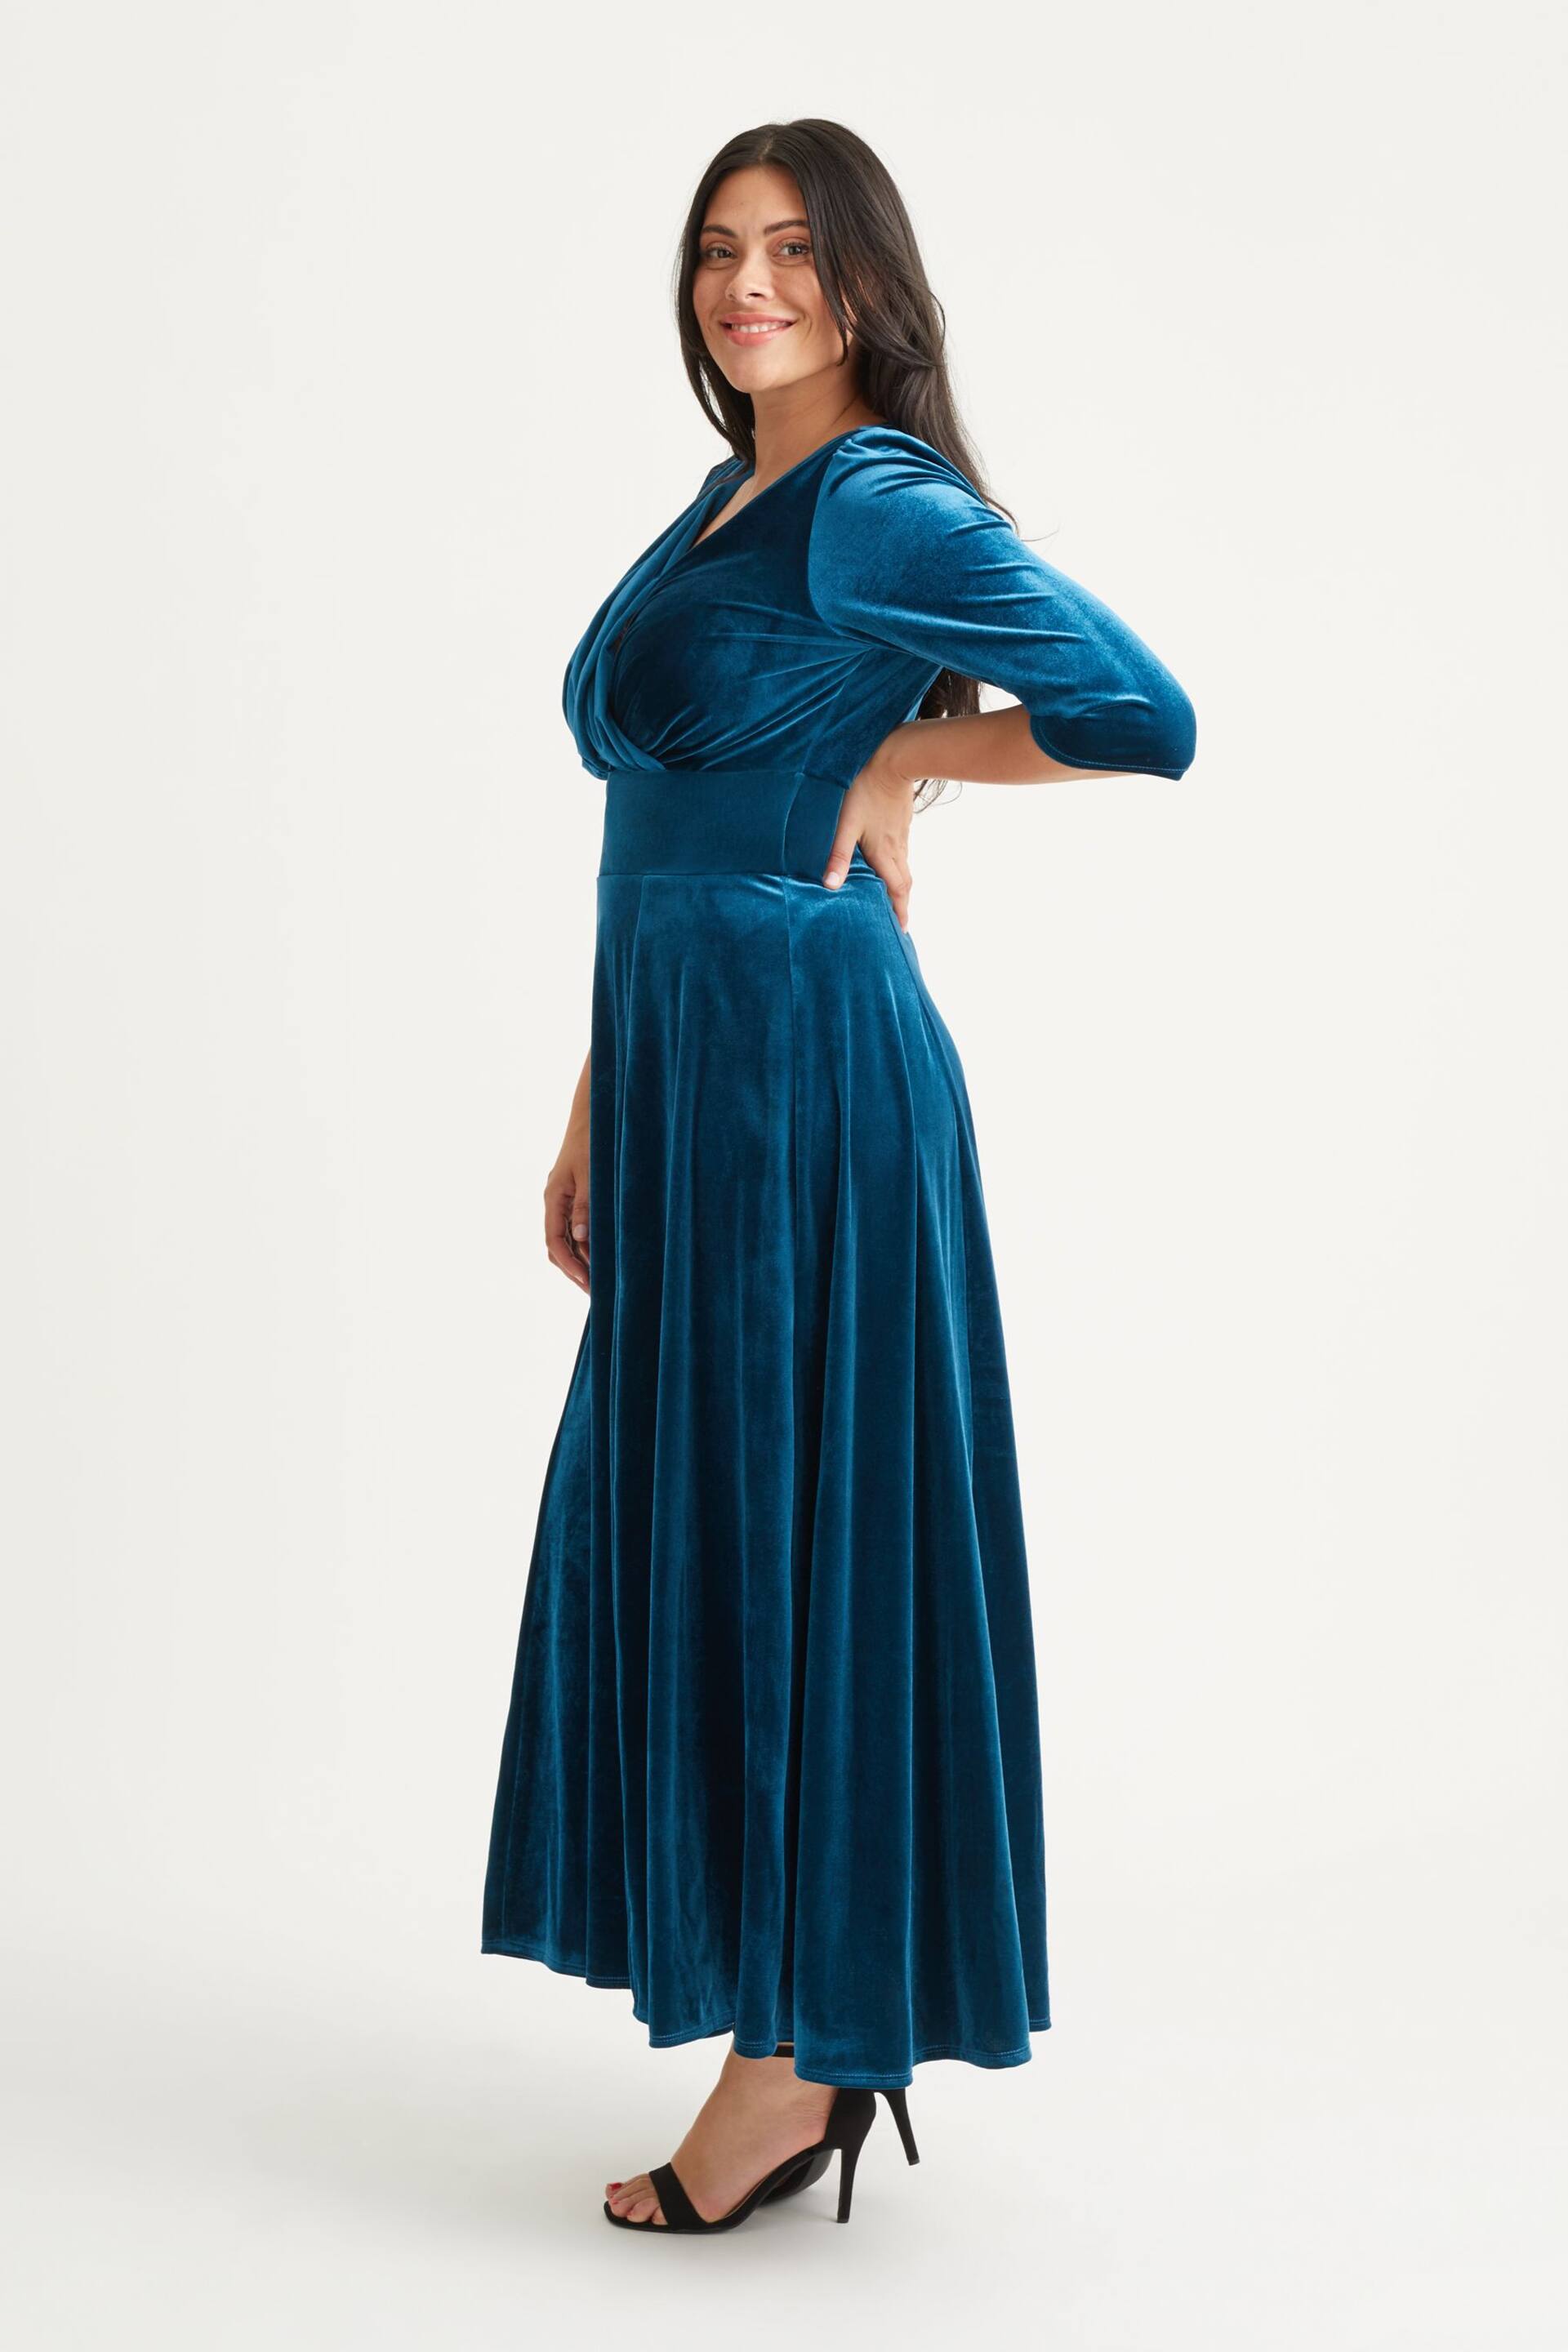 Scarlett & Jo Teal Blue Verity Velvet Maxi Gown - Image 3 of 4